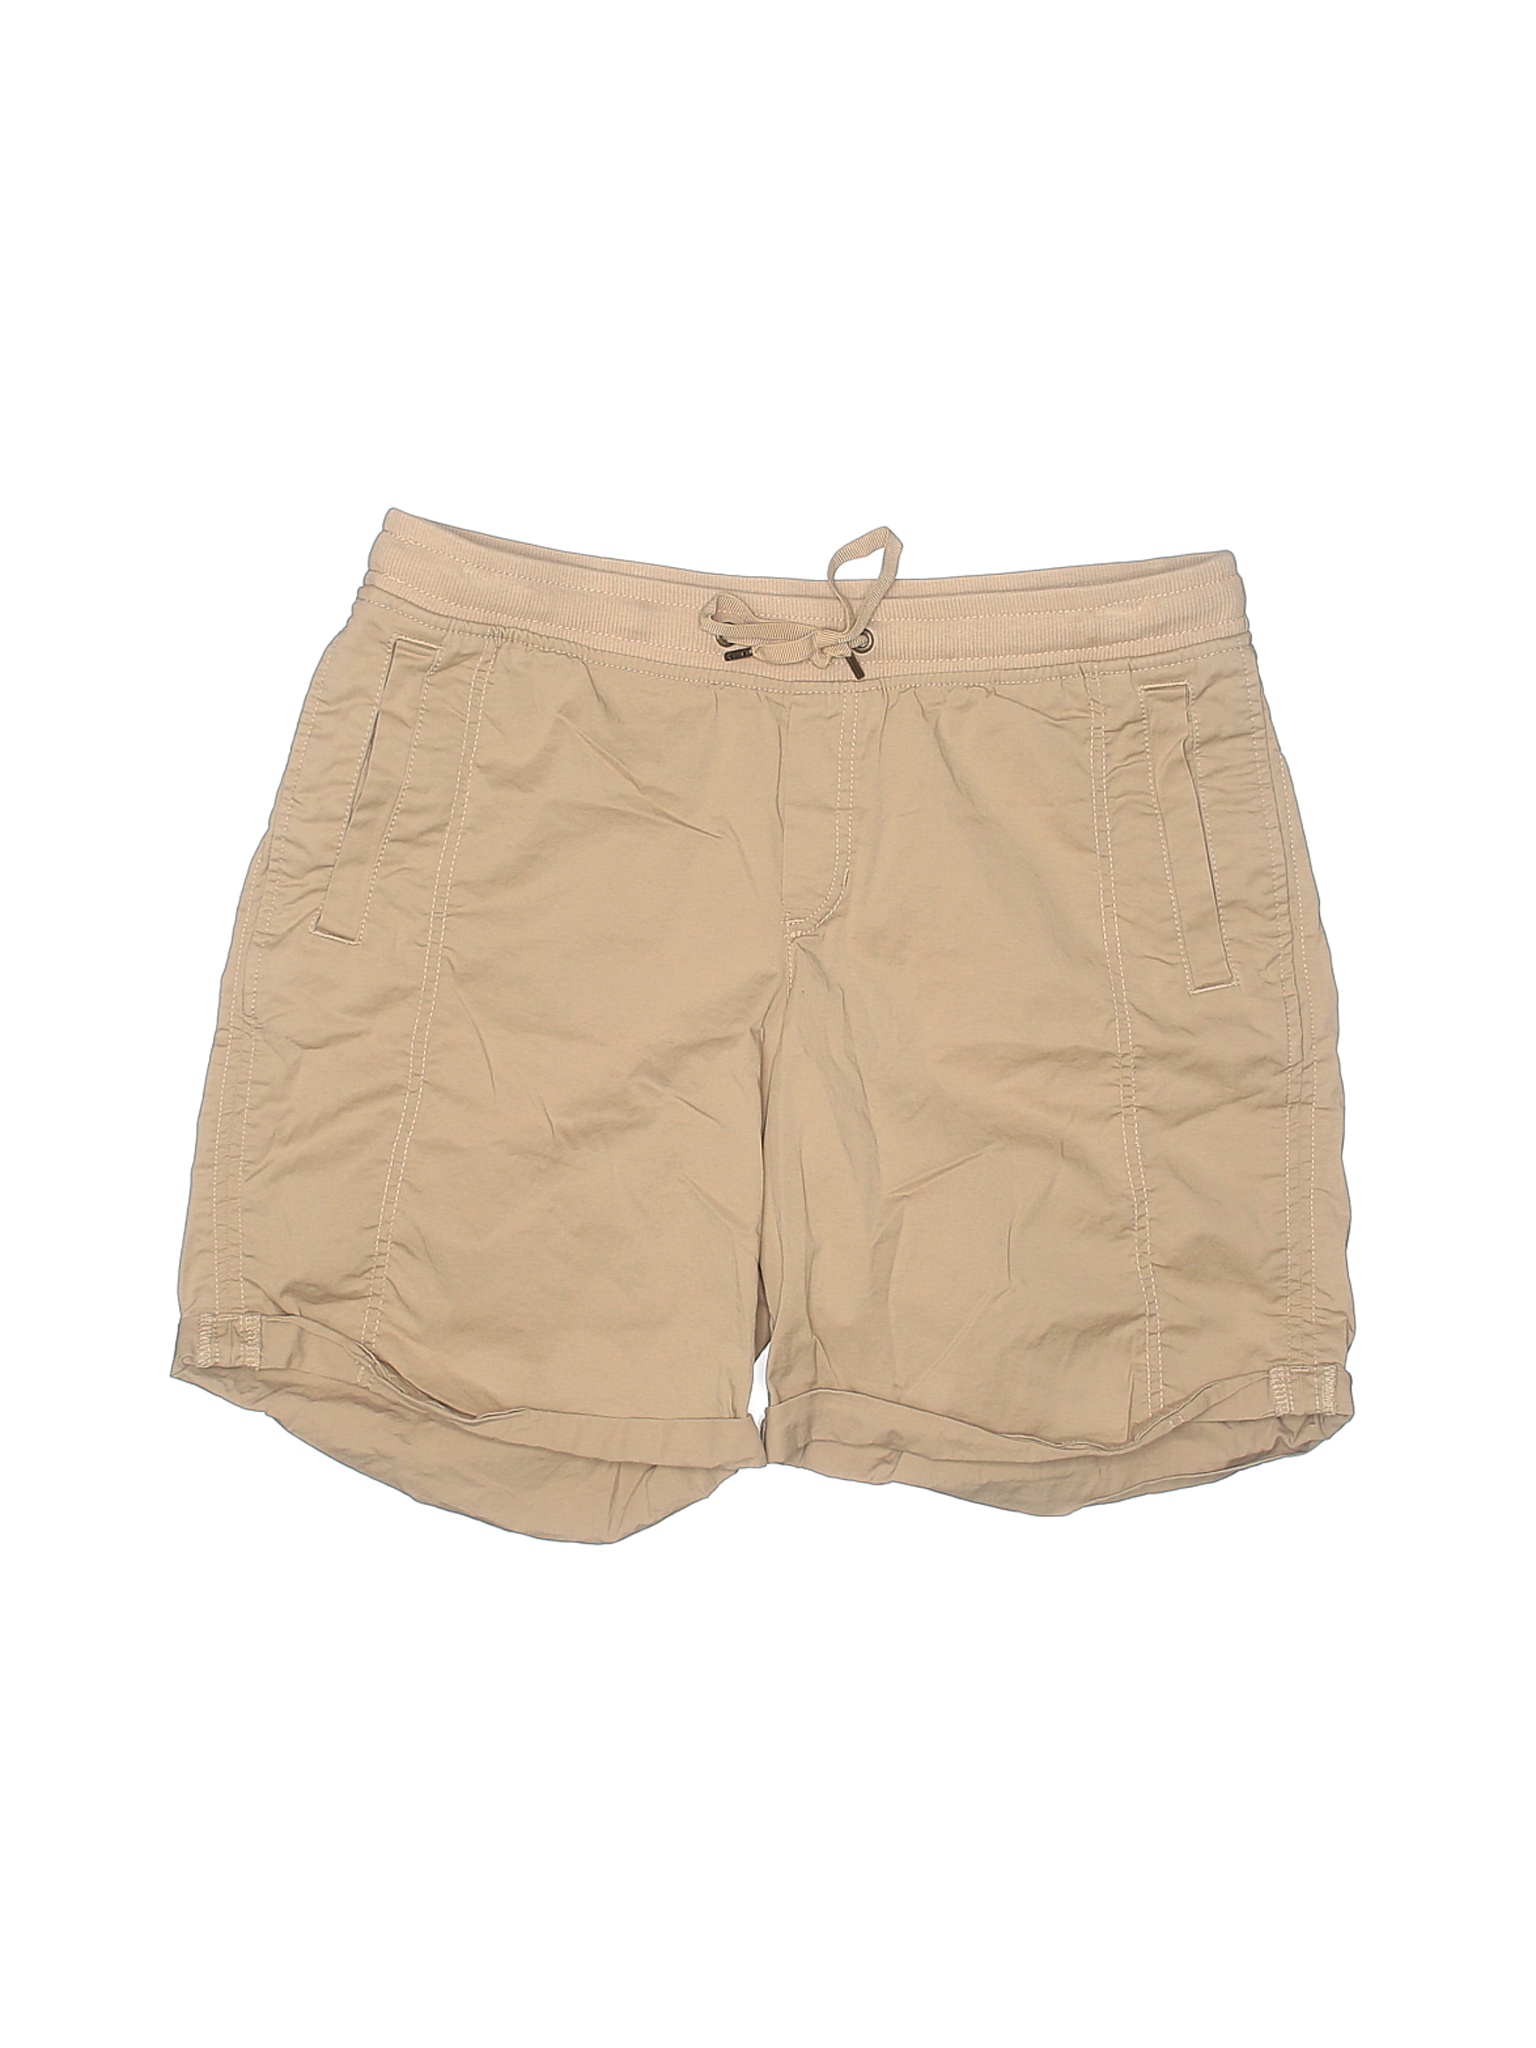 Eddie Bauer Women Brown Khaki Shorts 10 | eBay